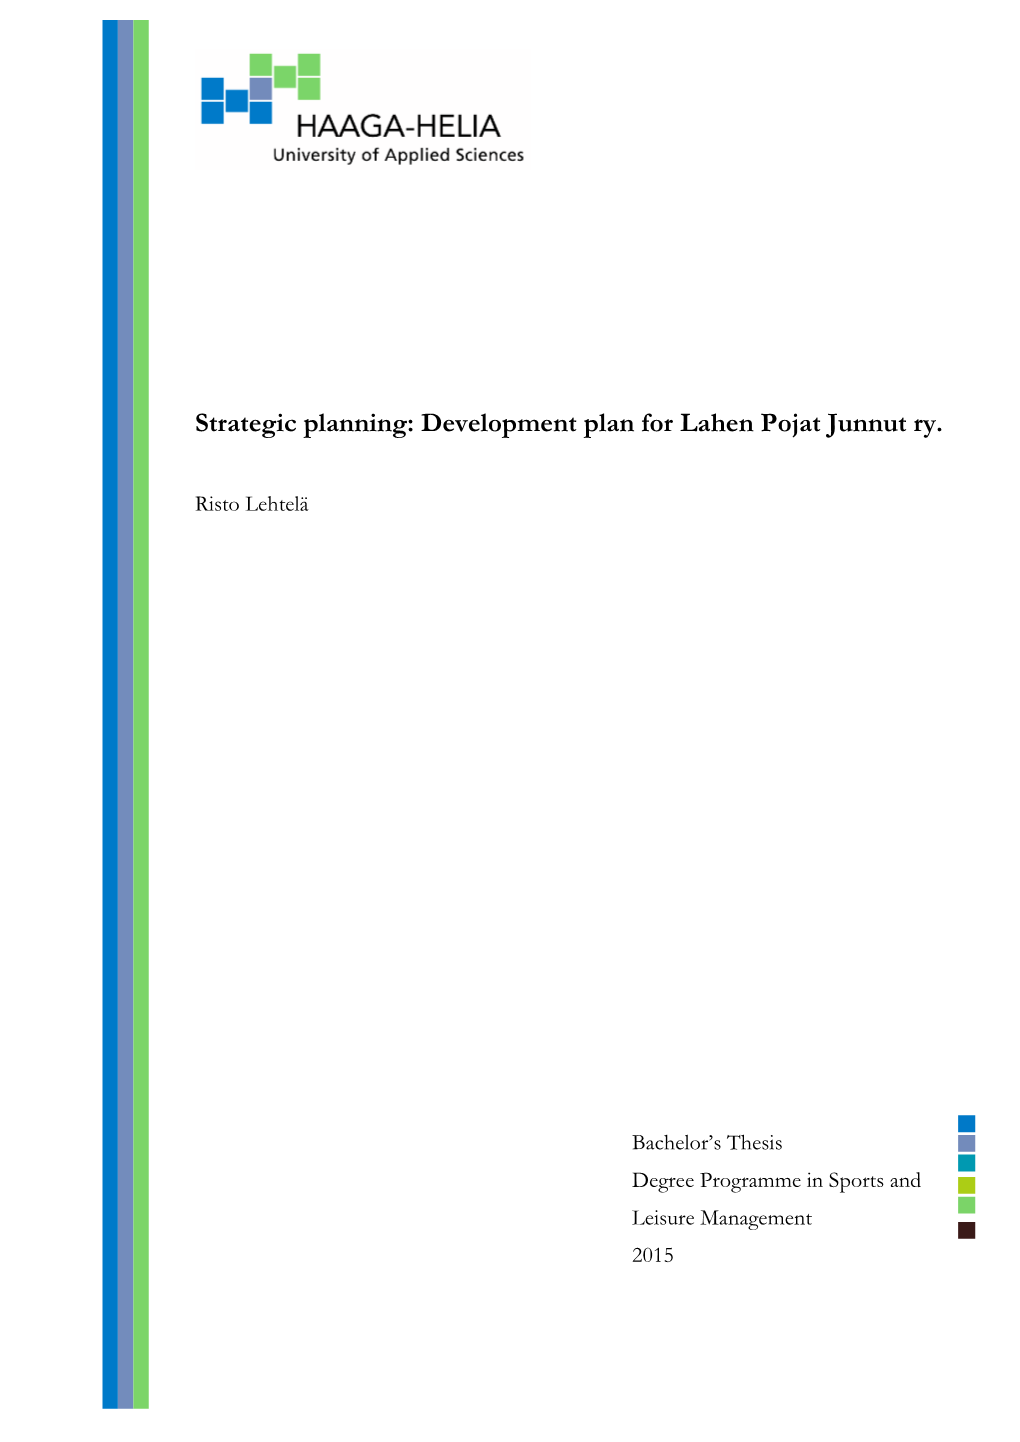 Strategic Planning: Development Plan for Lahen Pojat Junnut Ry